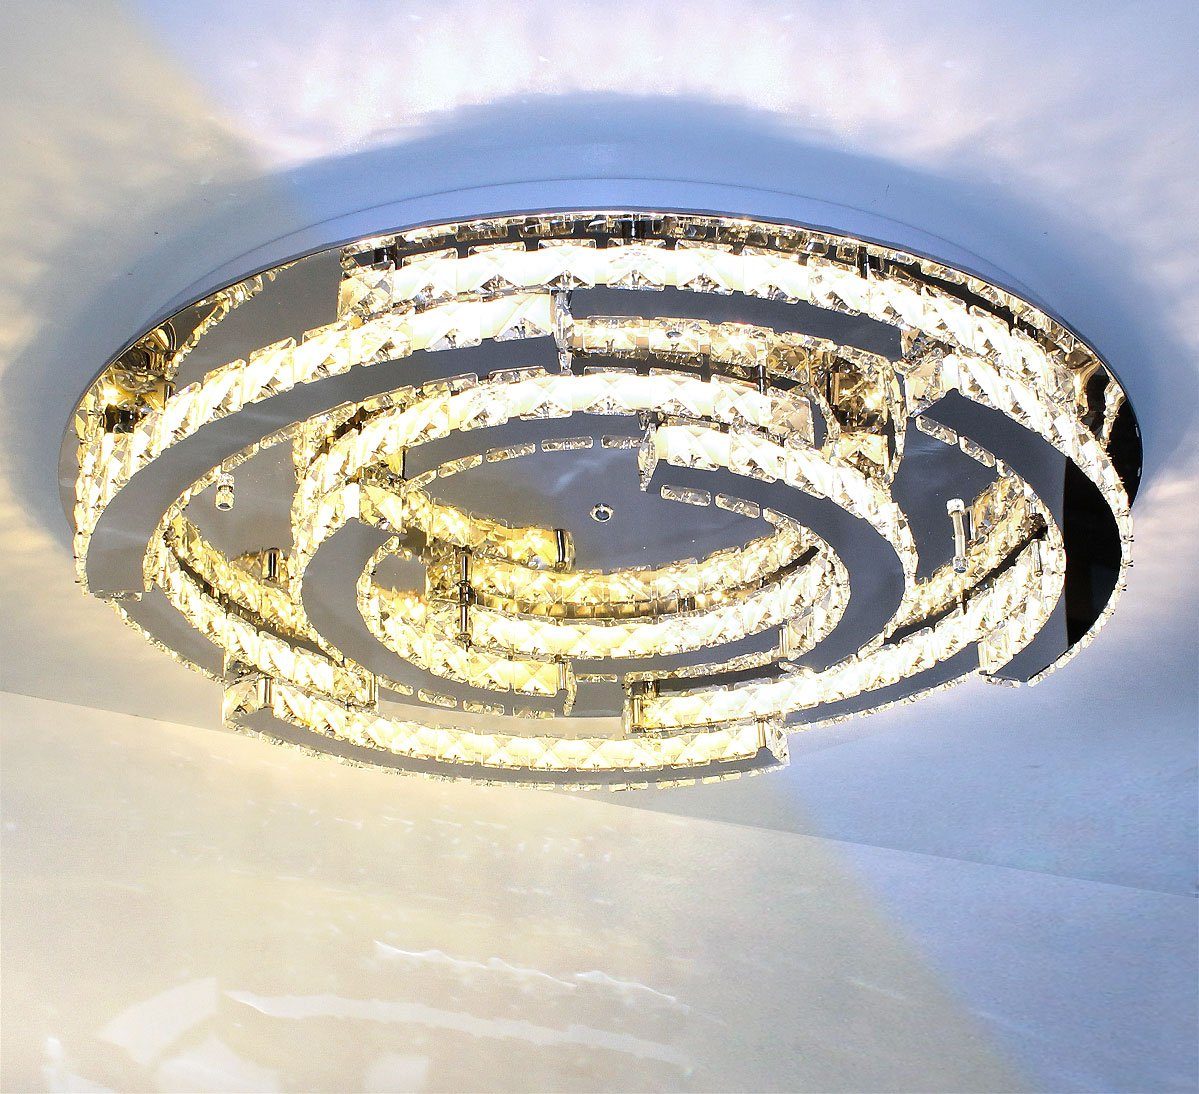 Lewima LED Deckenleuchte »Schost«, Glas Kristall Luxus XXXL Ø60-70cm groß Deckenlampe 50-55W, Modern Design Dimmbar rund, Warmweiß / Kaltweiß einstellbar, Silber verspiegelt inkl. Fernbedienung und Speicherfunktion